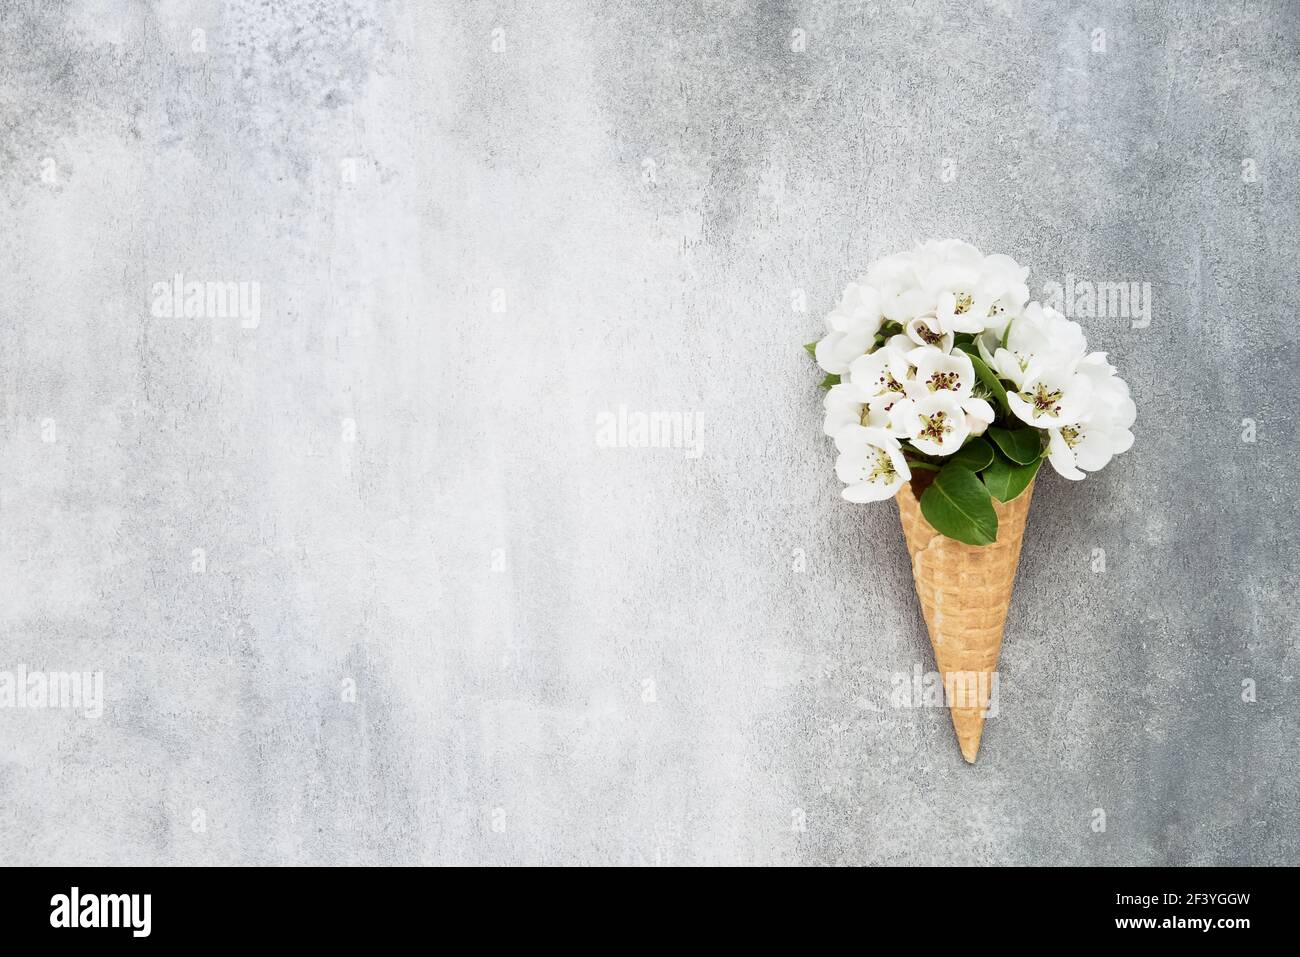 Cornet de glace gaufrée avec fleurs de poire sur fond gris. Concept de ressort. Copier l'espace pour le texte, vue de dessus Banque D'Images